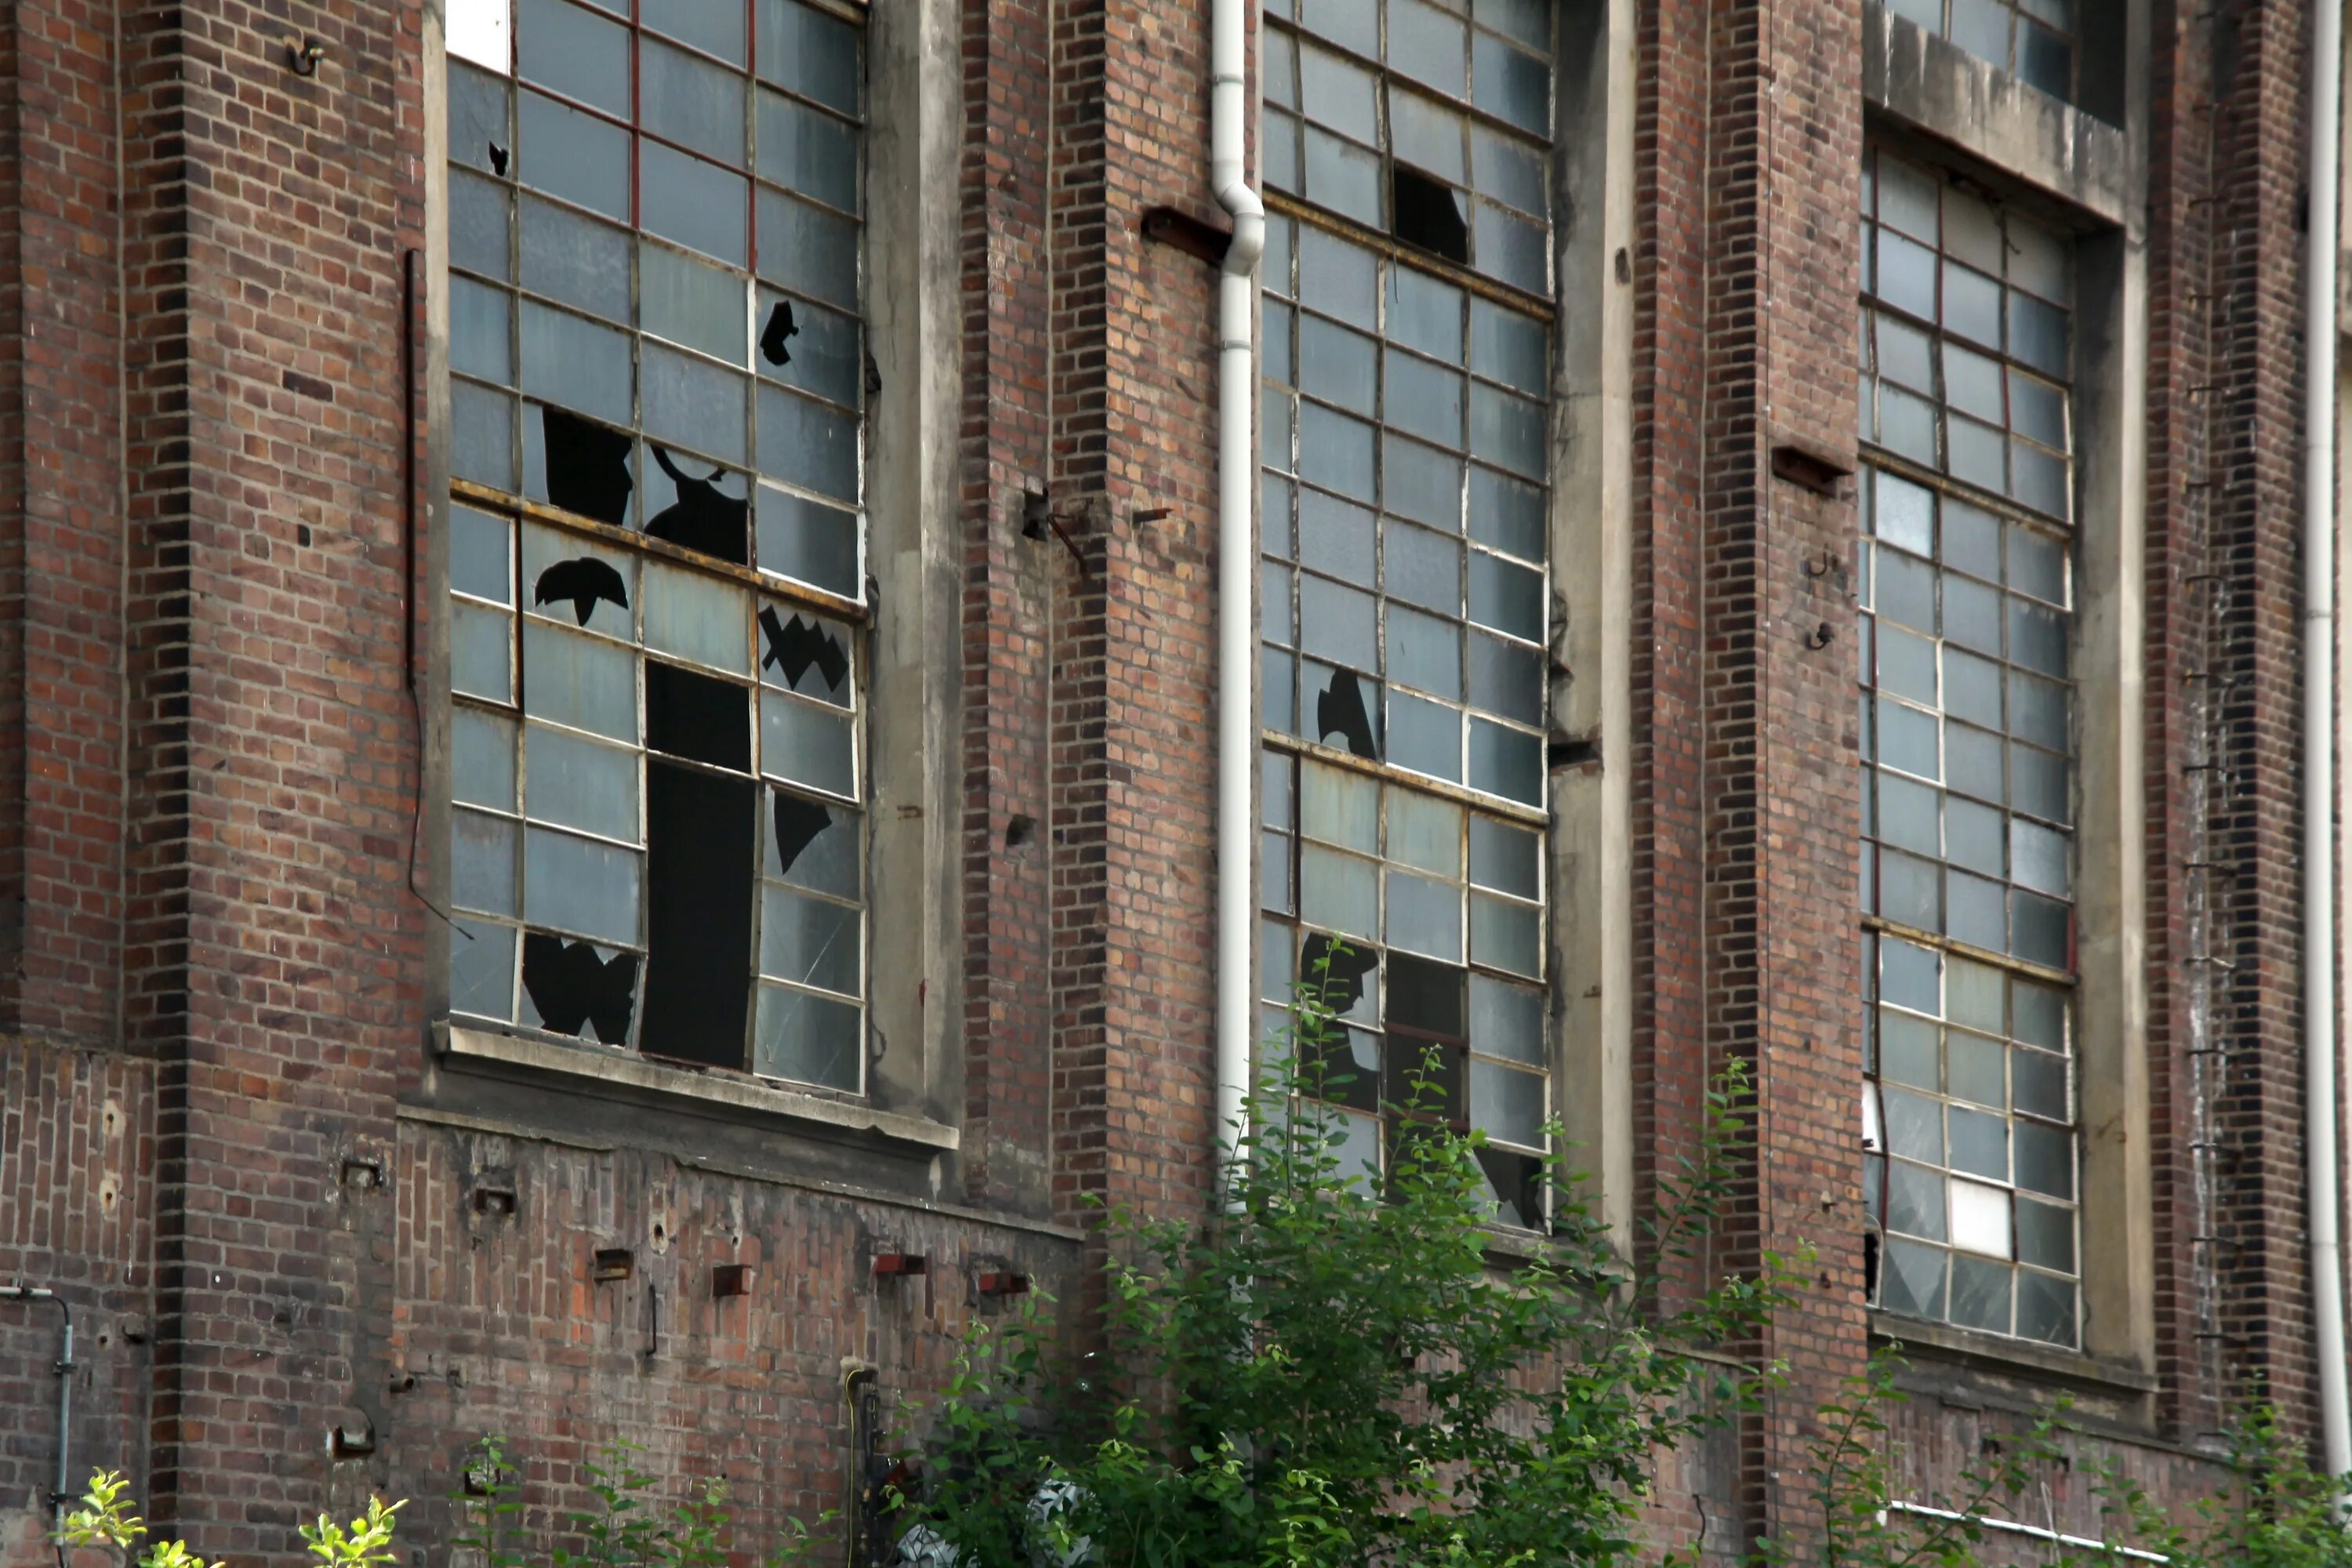 Разрушенное окно. Окно разрушенного здания. Старые окна многоэтажек. Разбитых окна в здании.